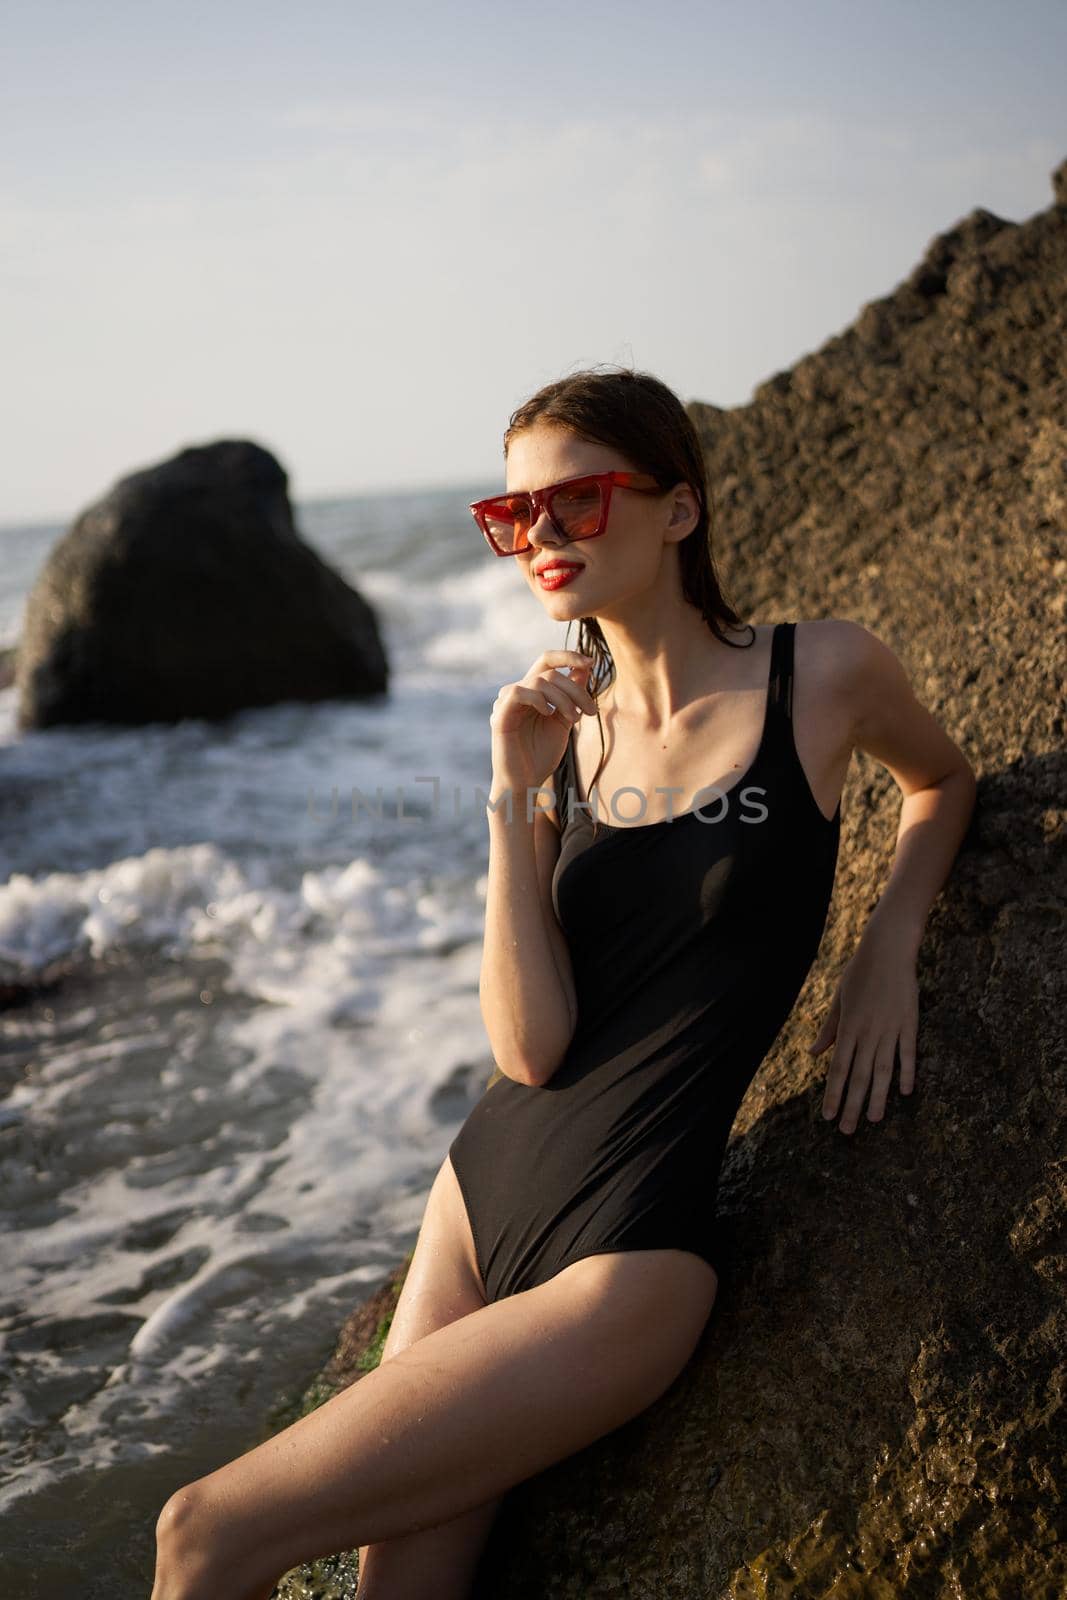 woman in swimsuit sunglasses ocean rocks posing by Vichizh